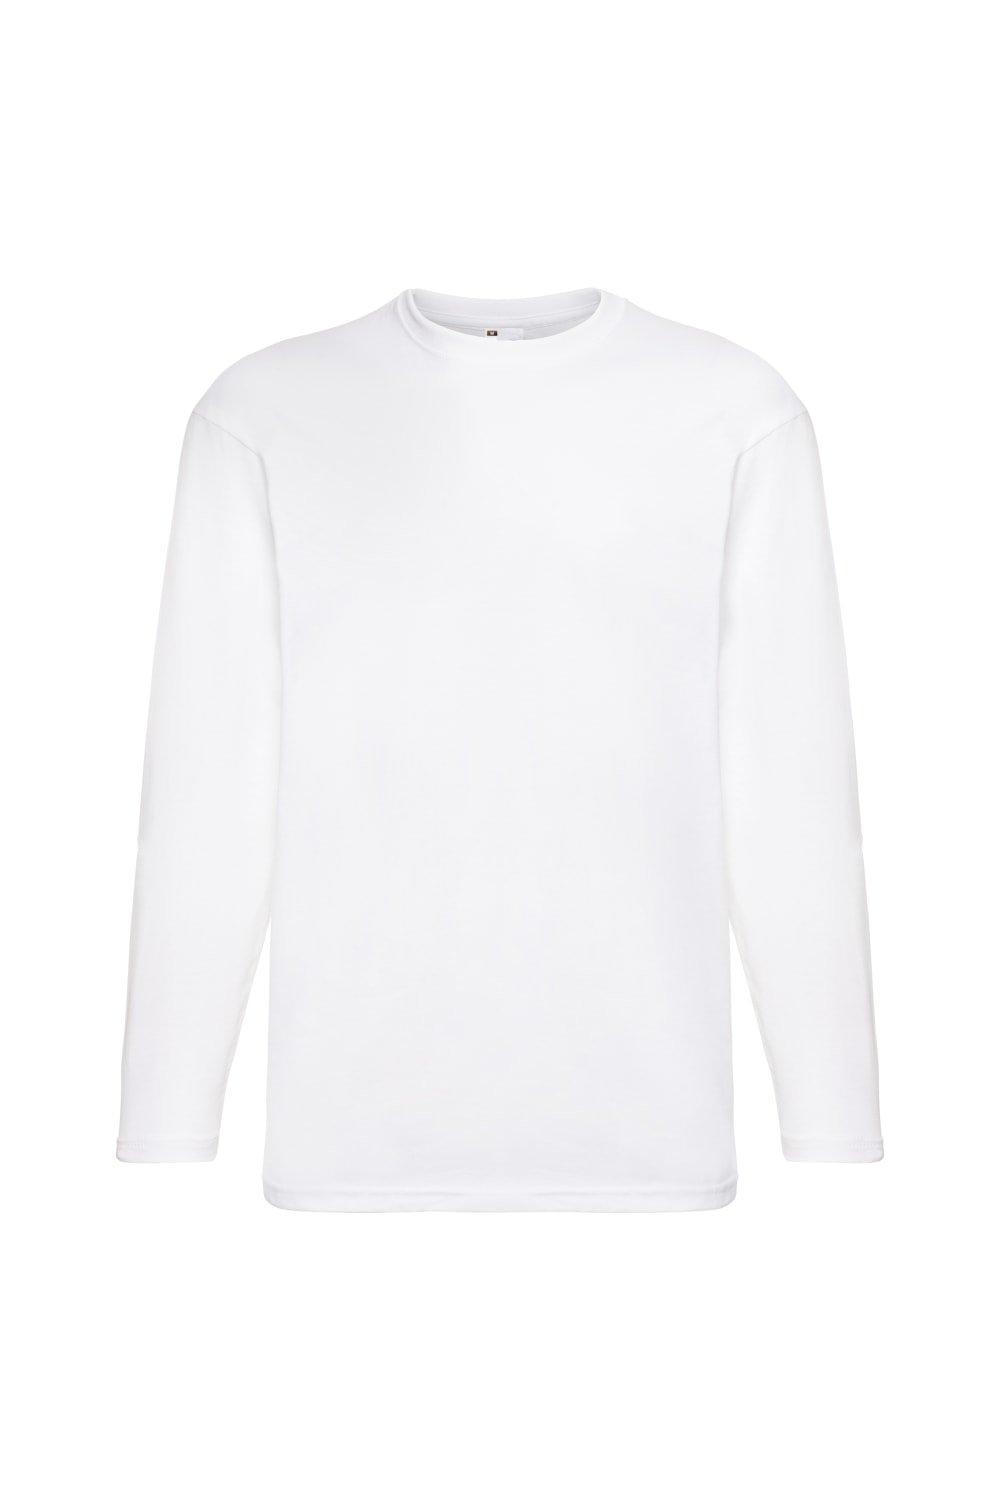 Повседневная футболка Value с длинным рукавом Universal Textiles, белый